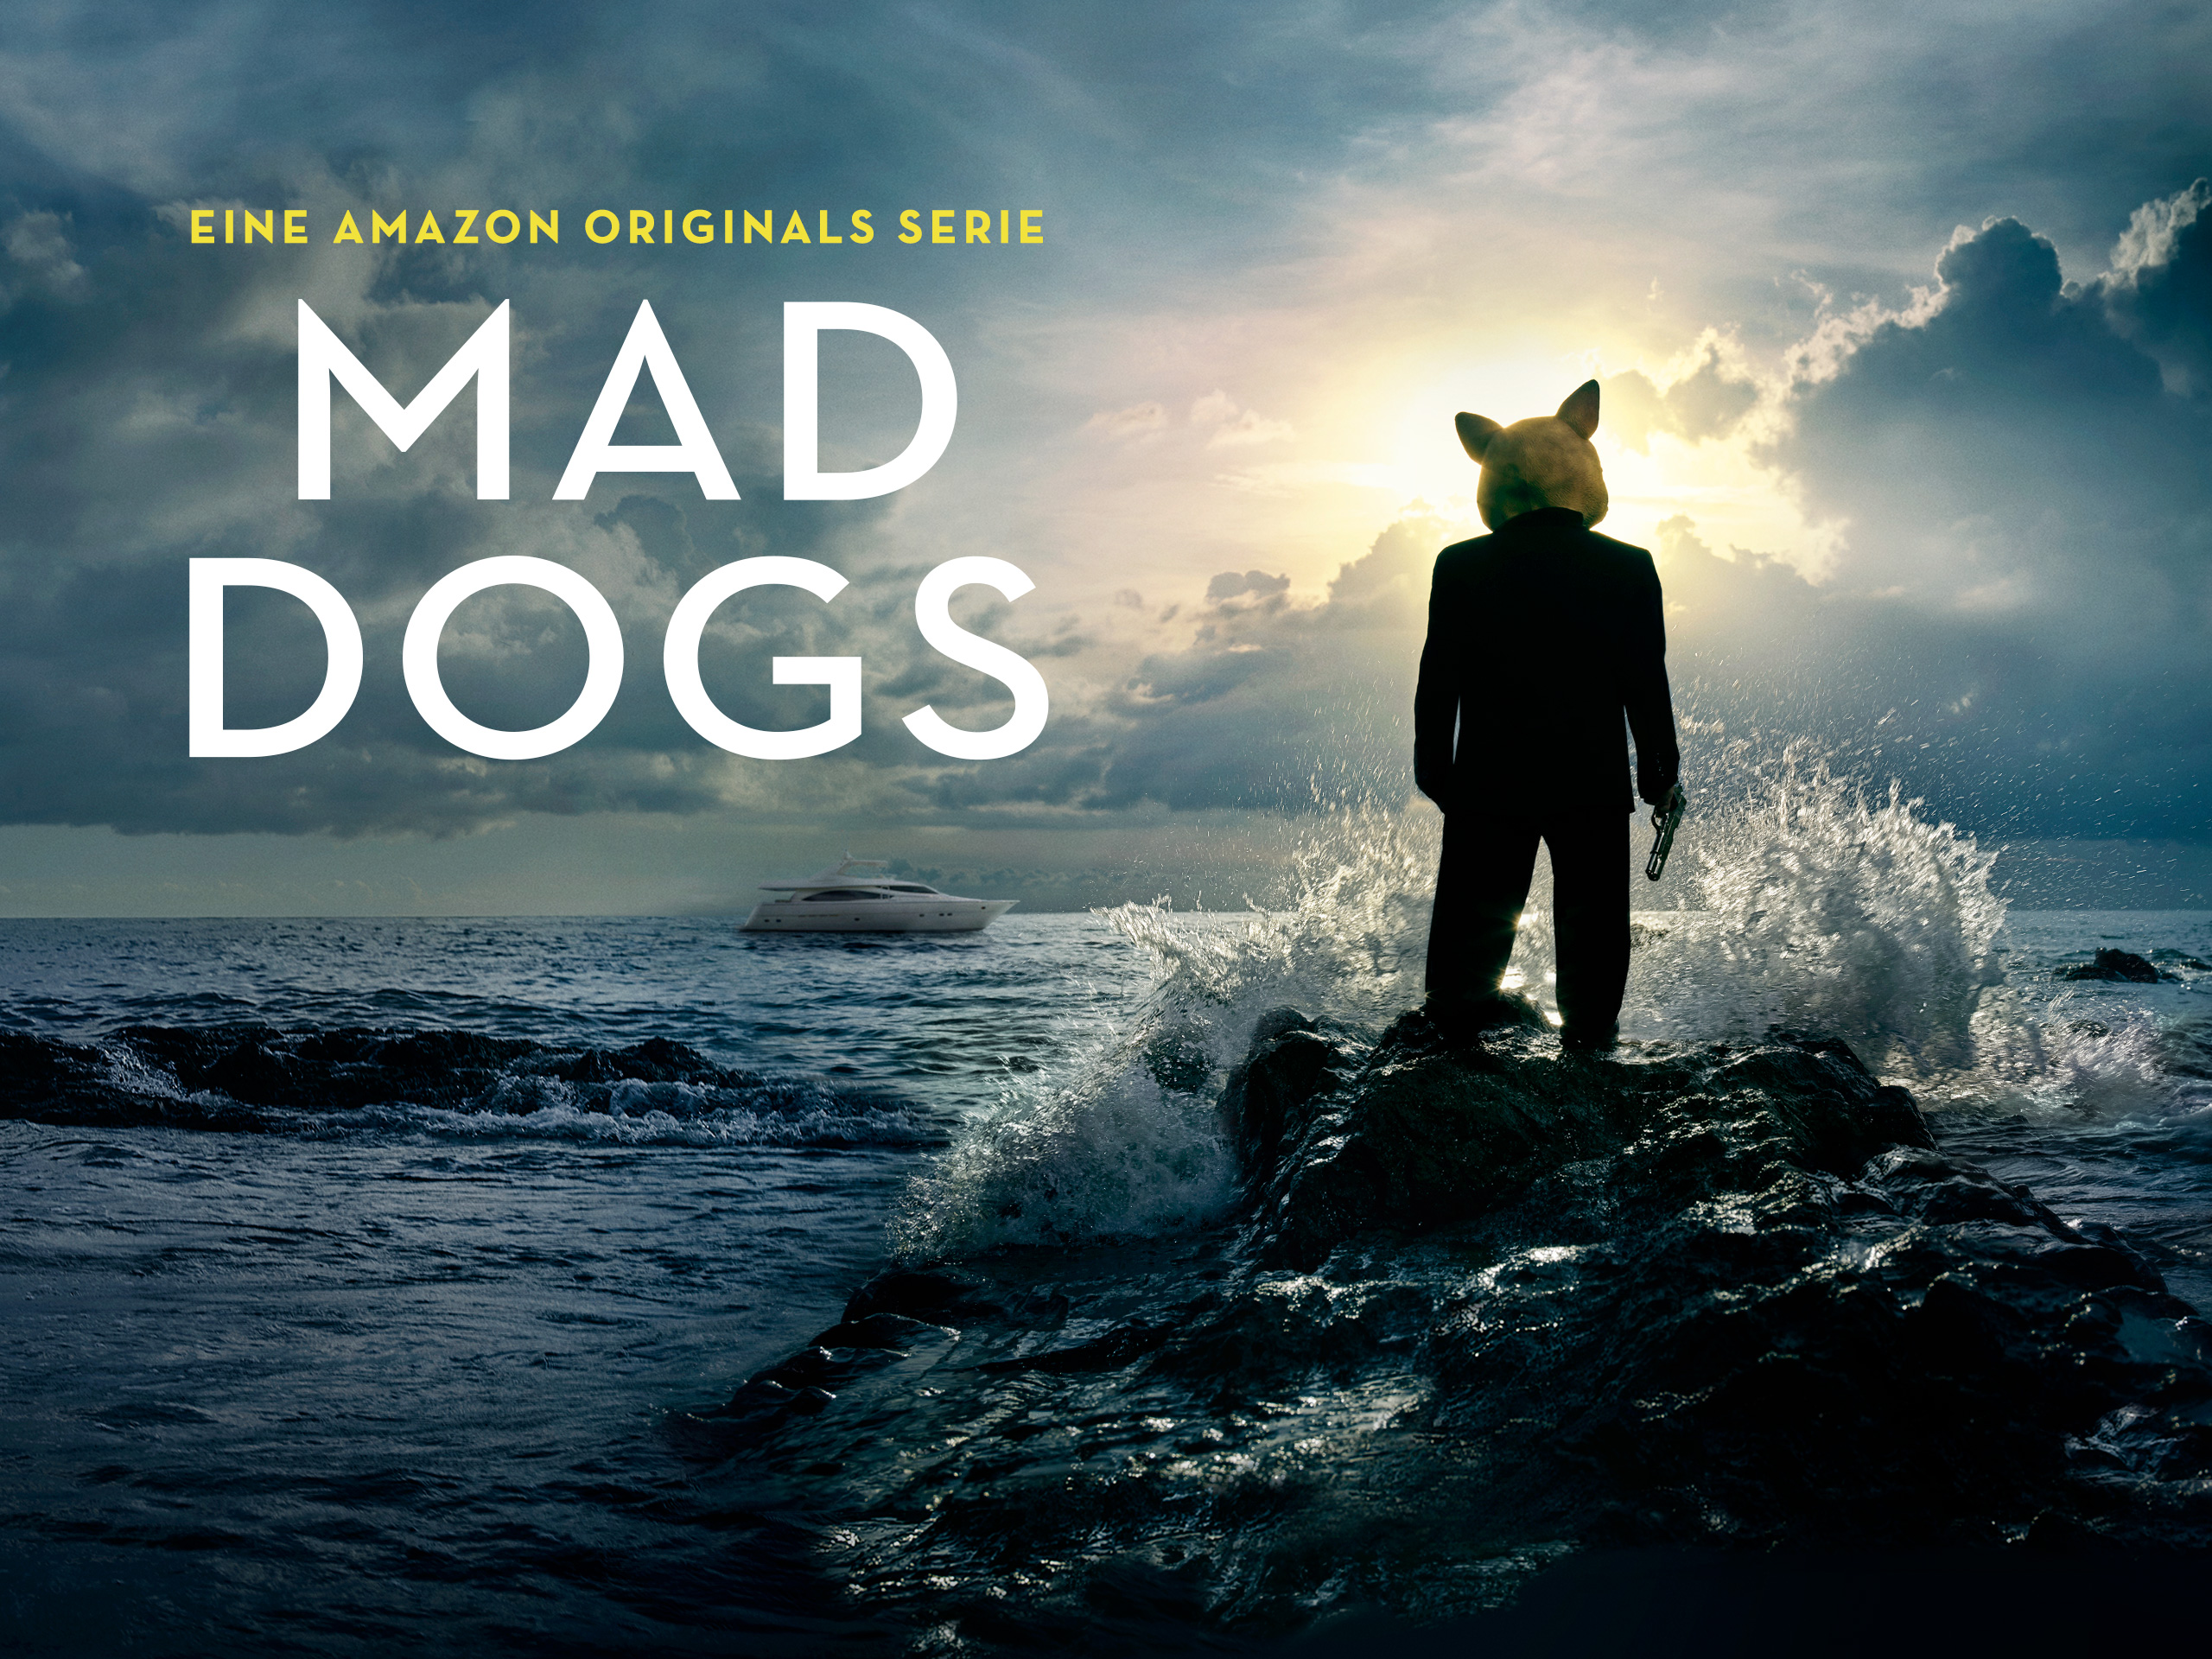 mad-dogs-serie-amazon-titelbild-staffel-1